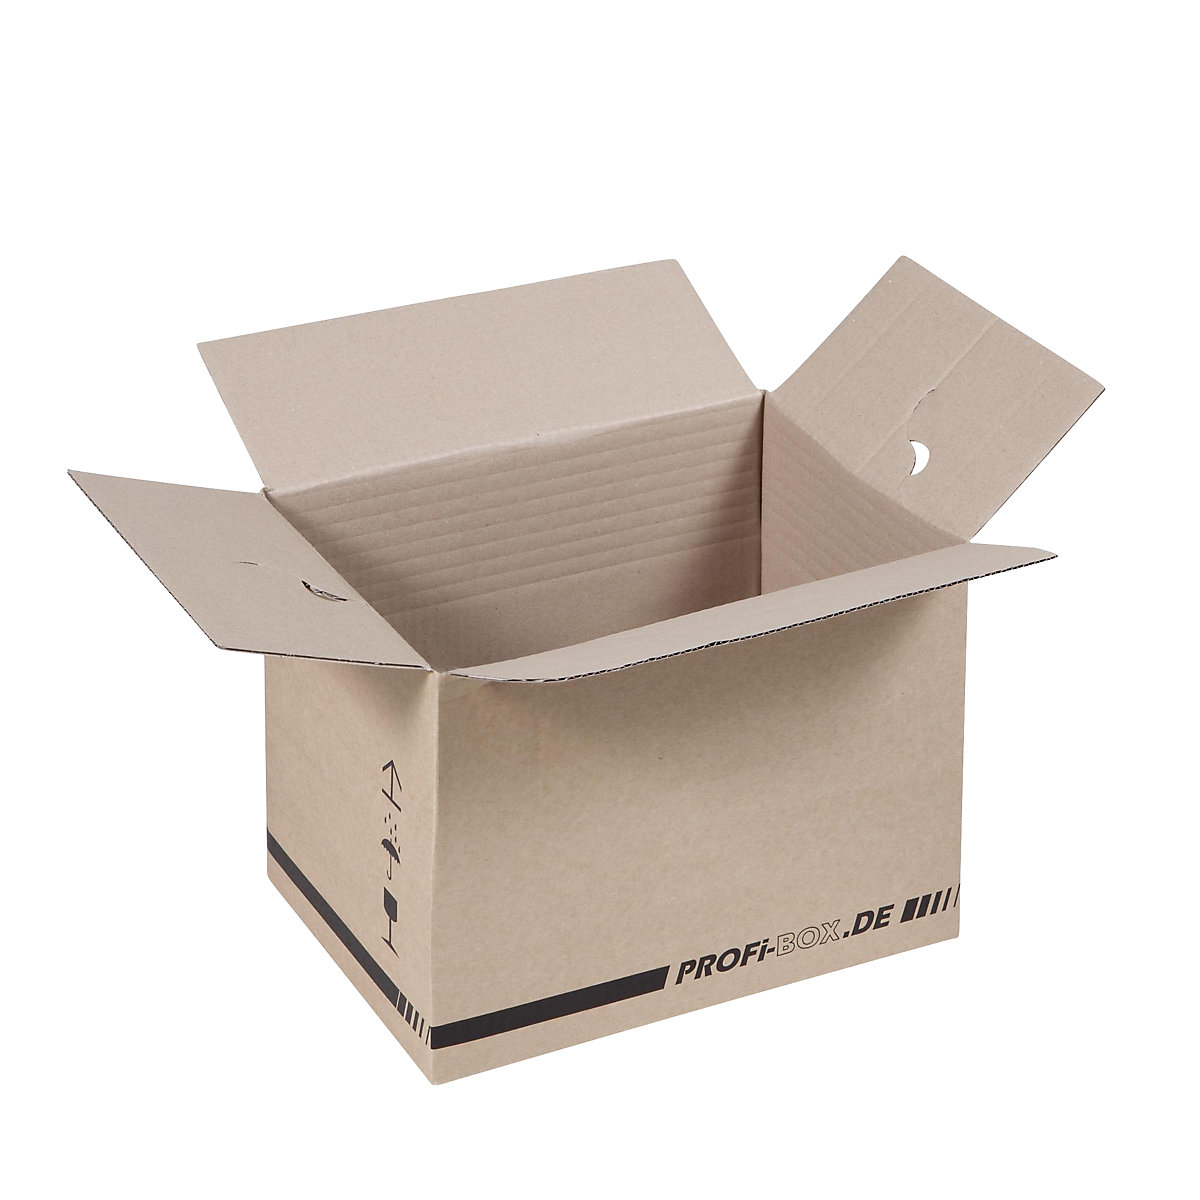 Profesionalne kutije, od 1-valnog kartona, FEFCO 0701, unutarnje dimenzije 305 x 215 x 220 mm, pak. 50 kom.